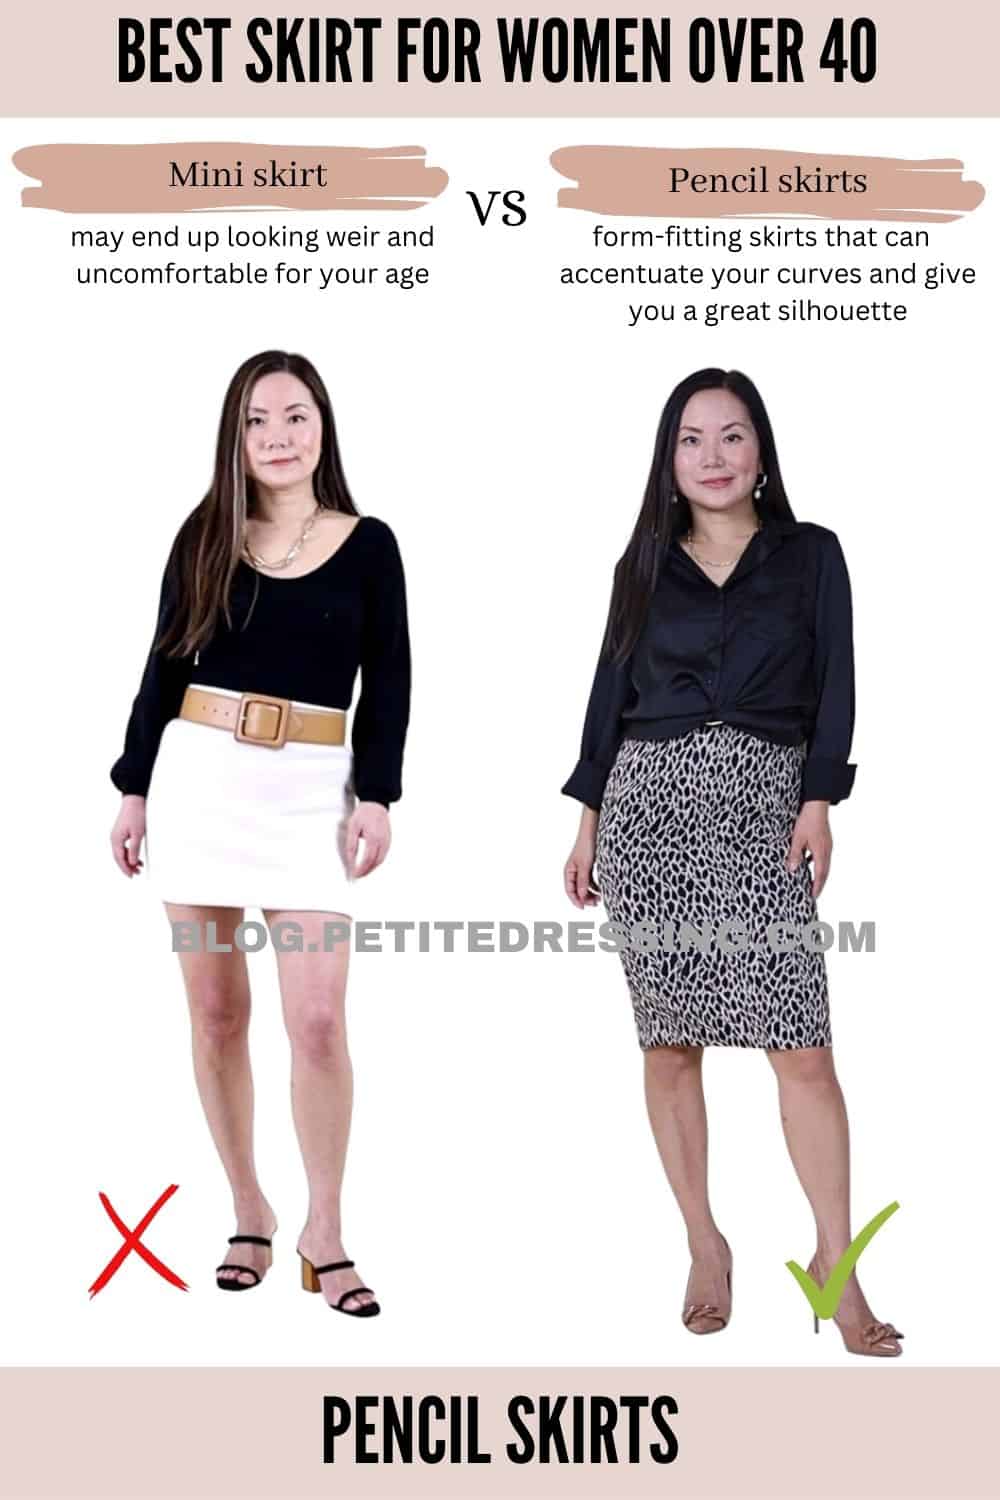 The Skirt Guide for Women Over 40-Pencil skirt